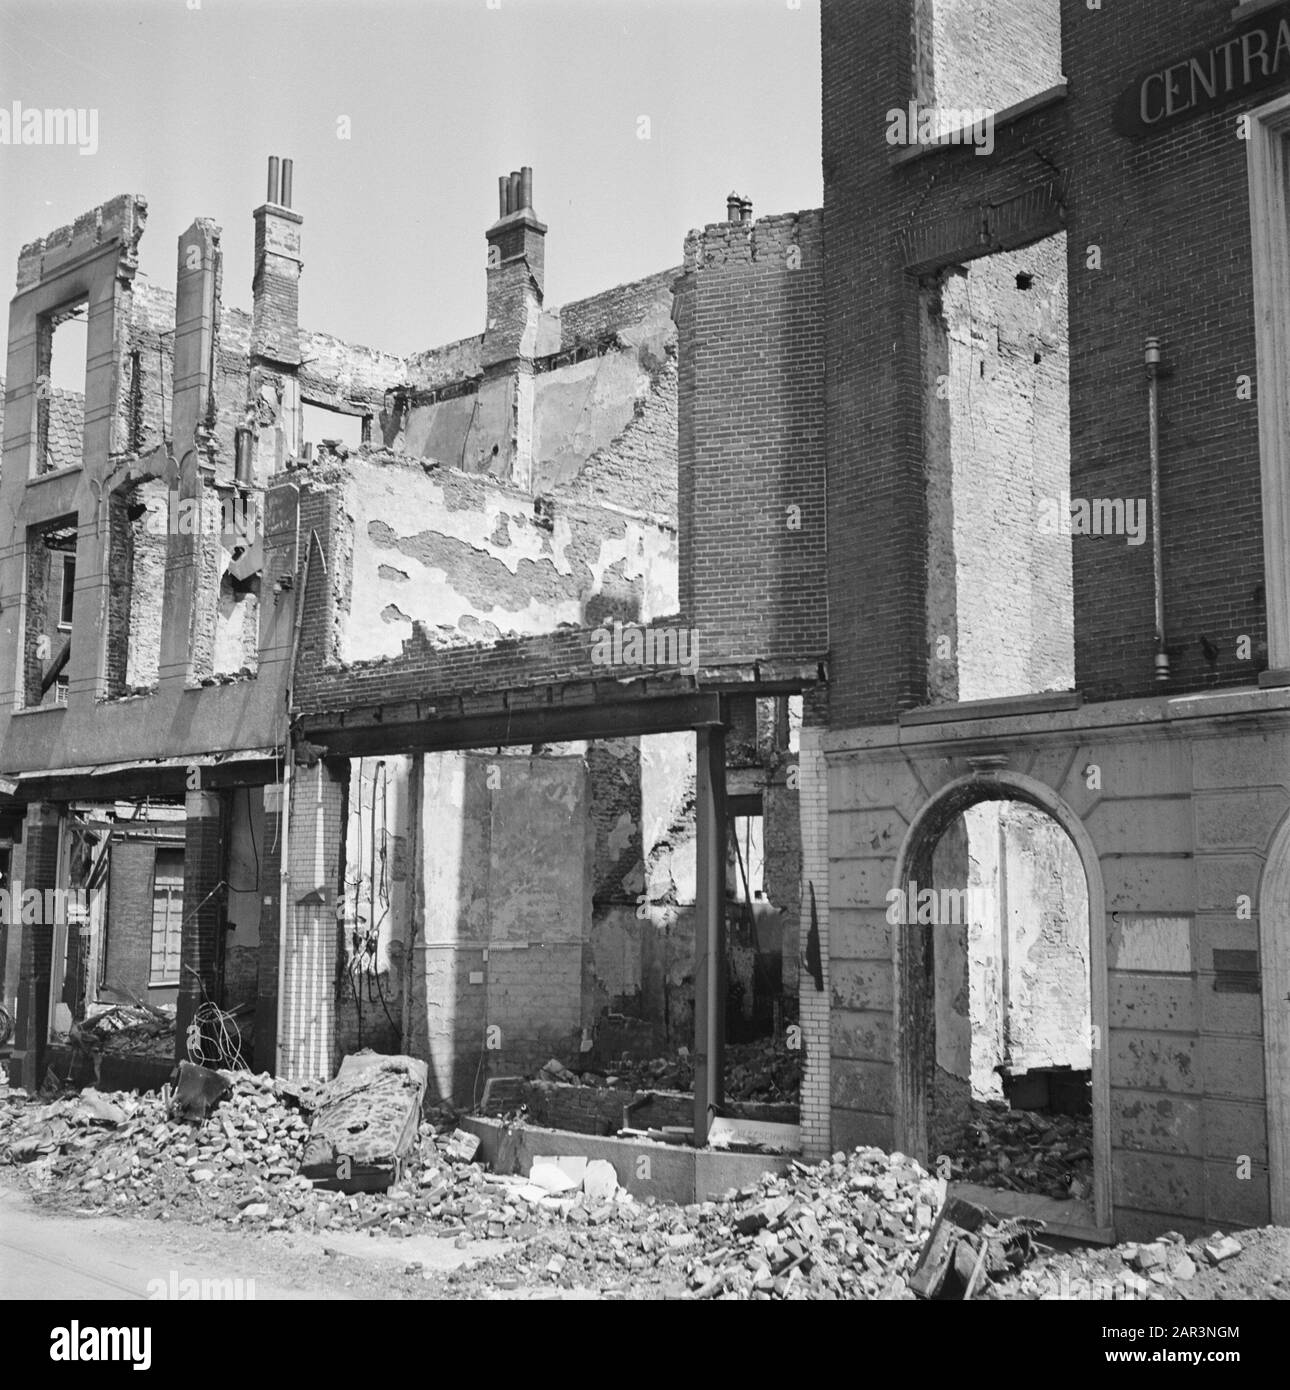 Vernielingen: Arnhem  [destroyed buildings] Date: June 1945 Location: Arnhem Keywords: buildings, Second World War, destruction Stock Photo